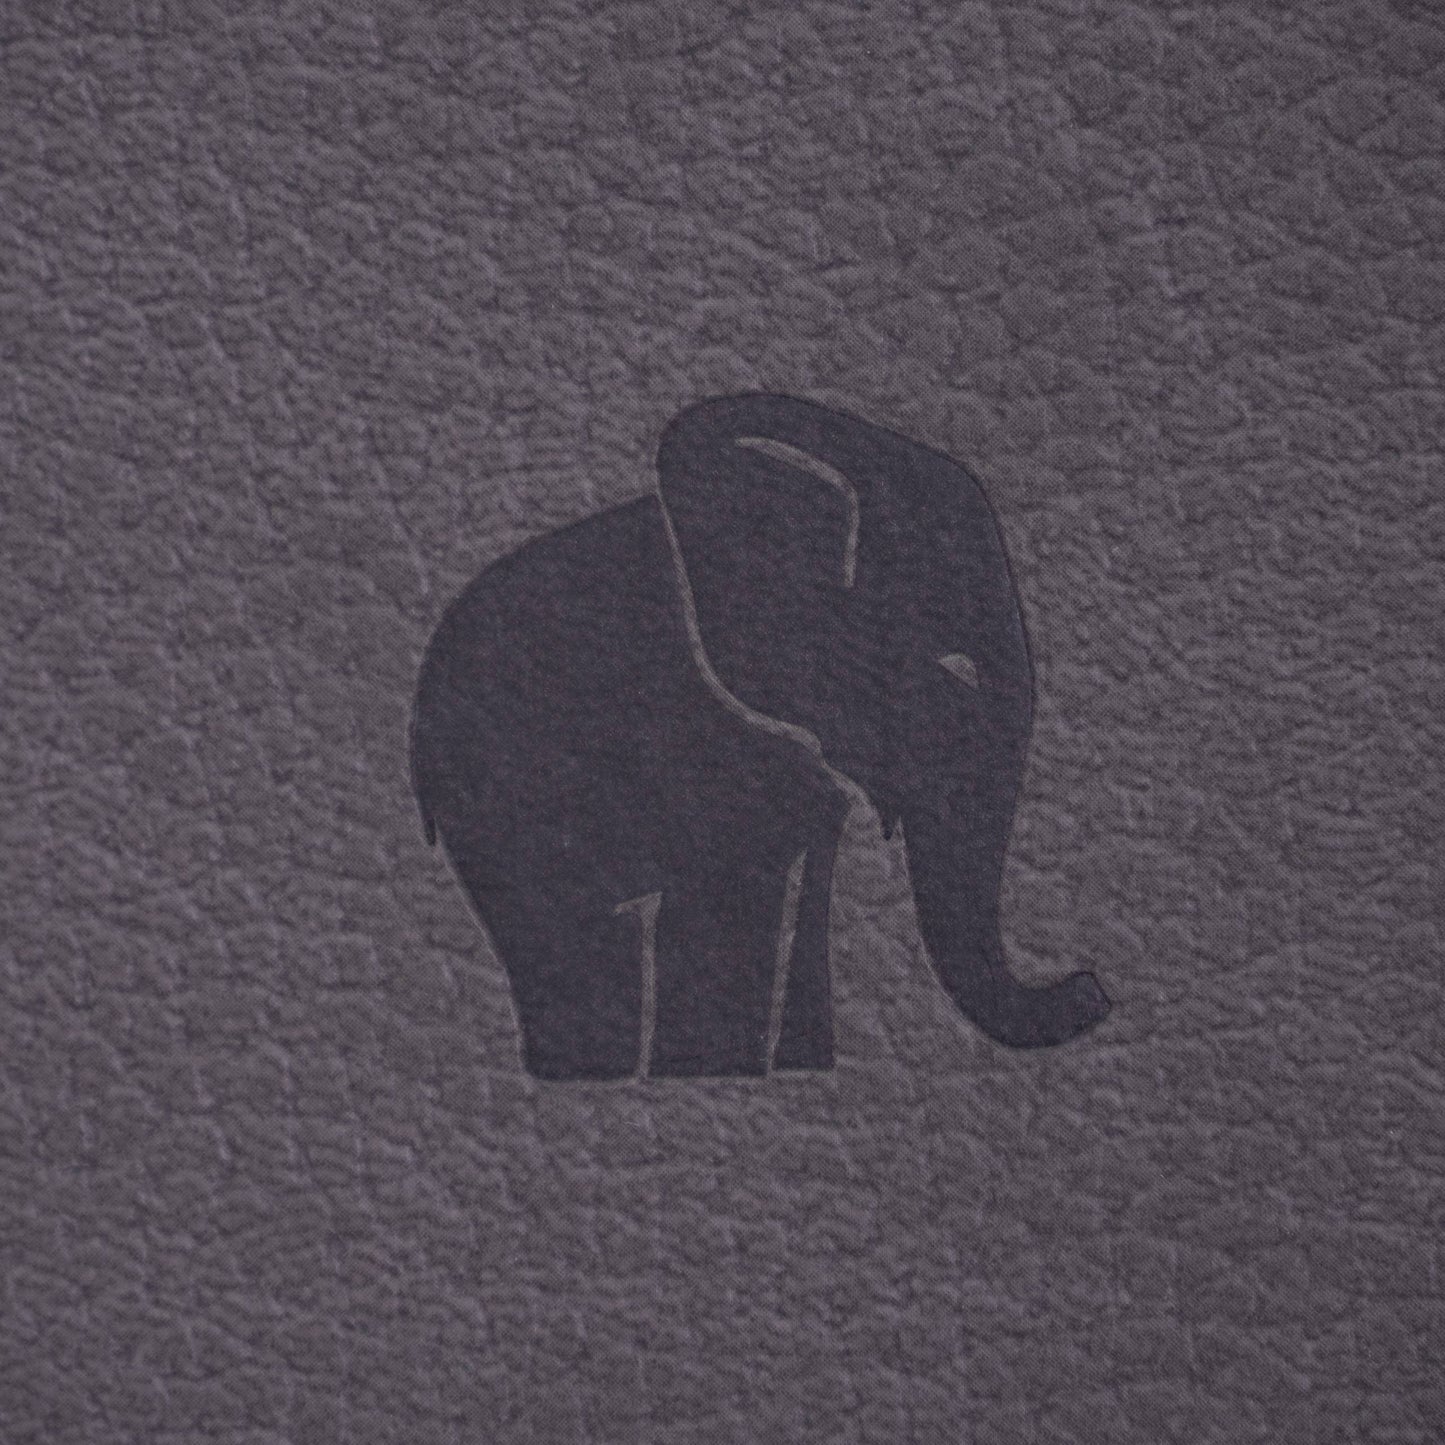 Dingbats* Wildlife A4+ Grey Elephant Notatbok ‑ Linjert